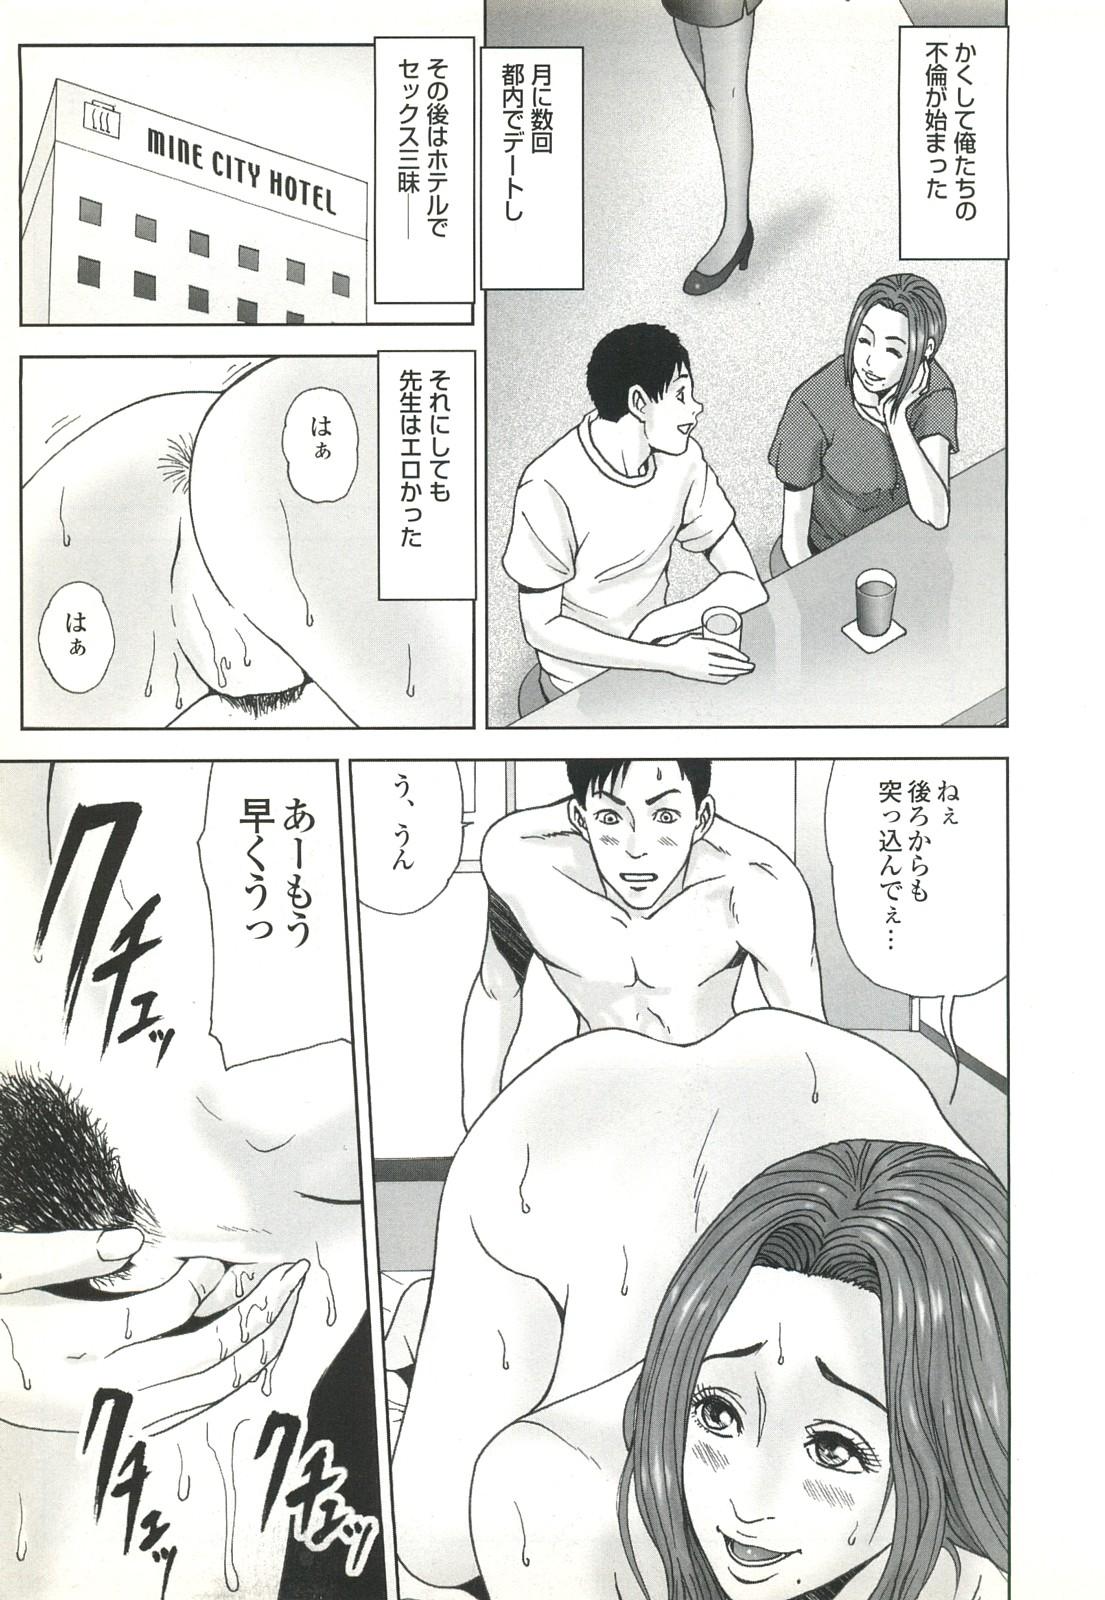 コミック裏モノJAPAN Vol.18 今井のりたつスペシャル号 18